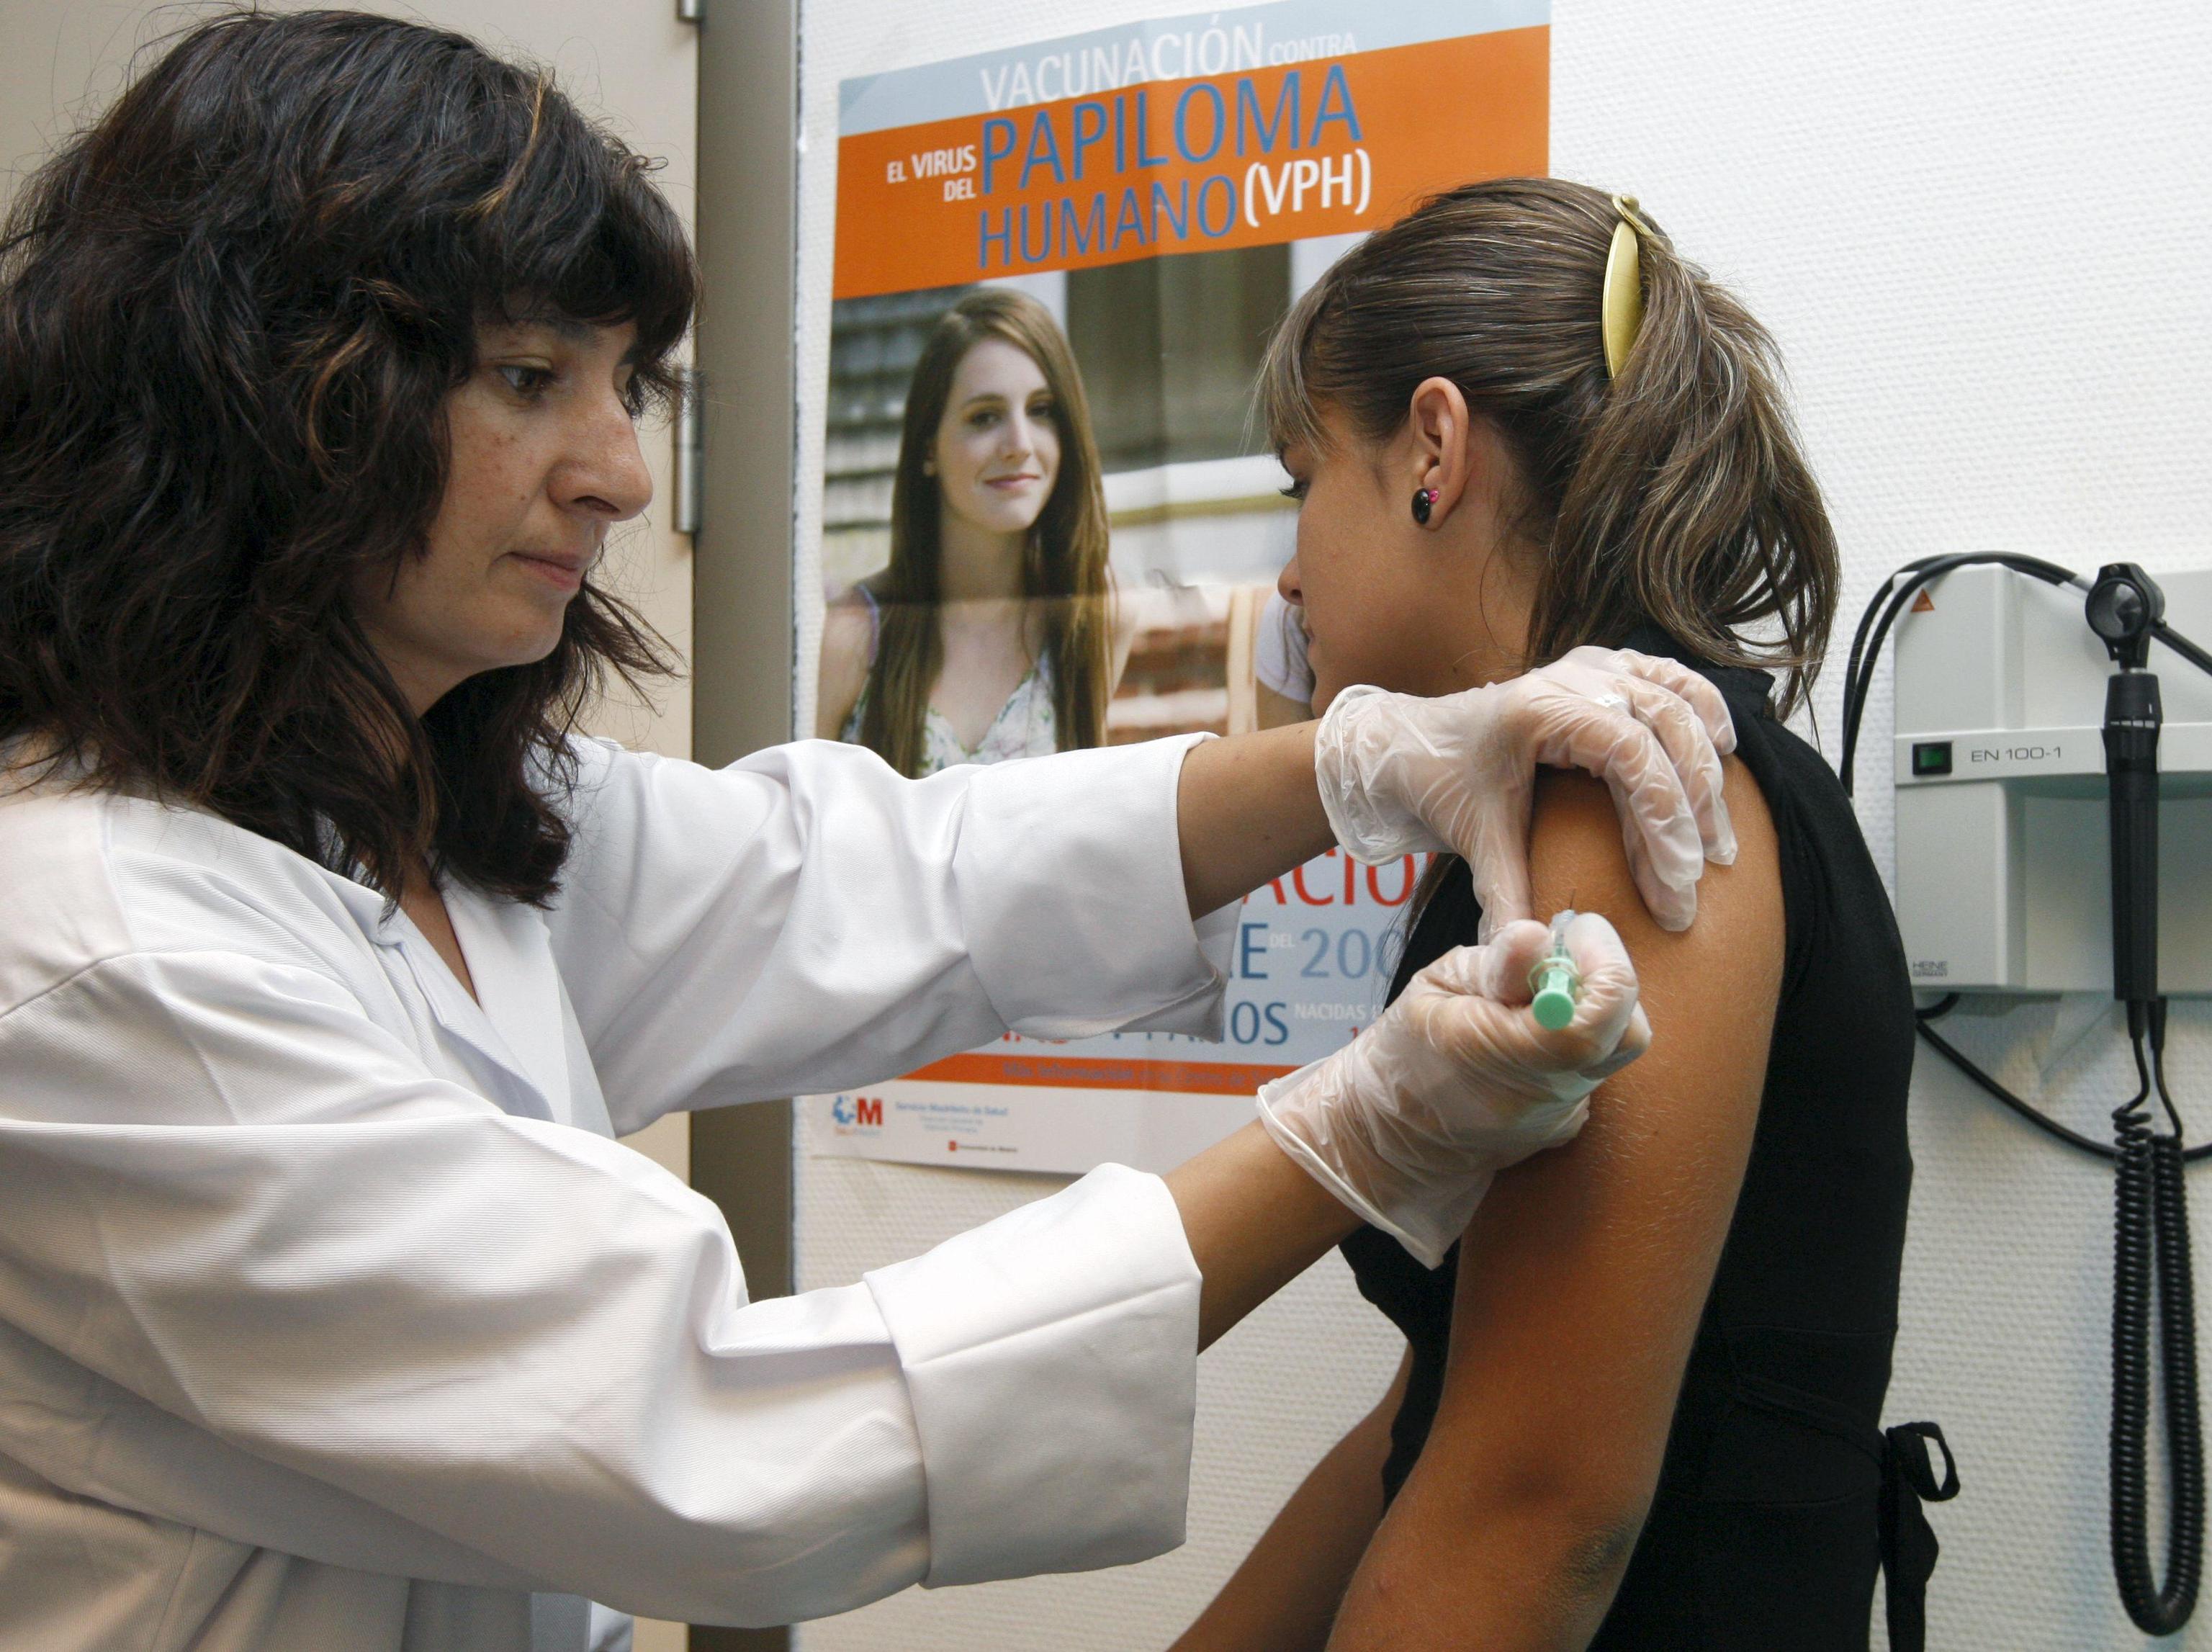 Una joven madrilea recibe la vacuna contra el virus del papiloma humano (VPH).